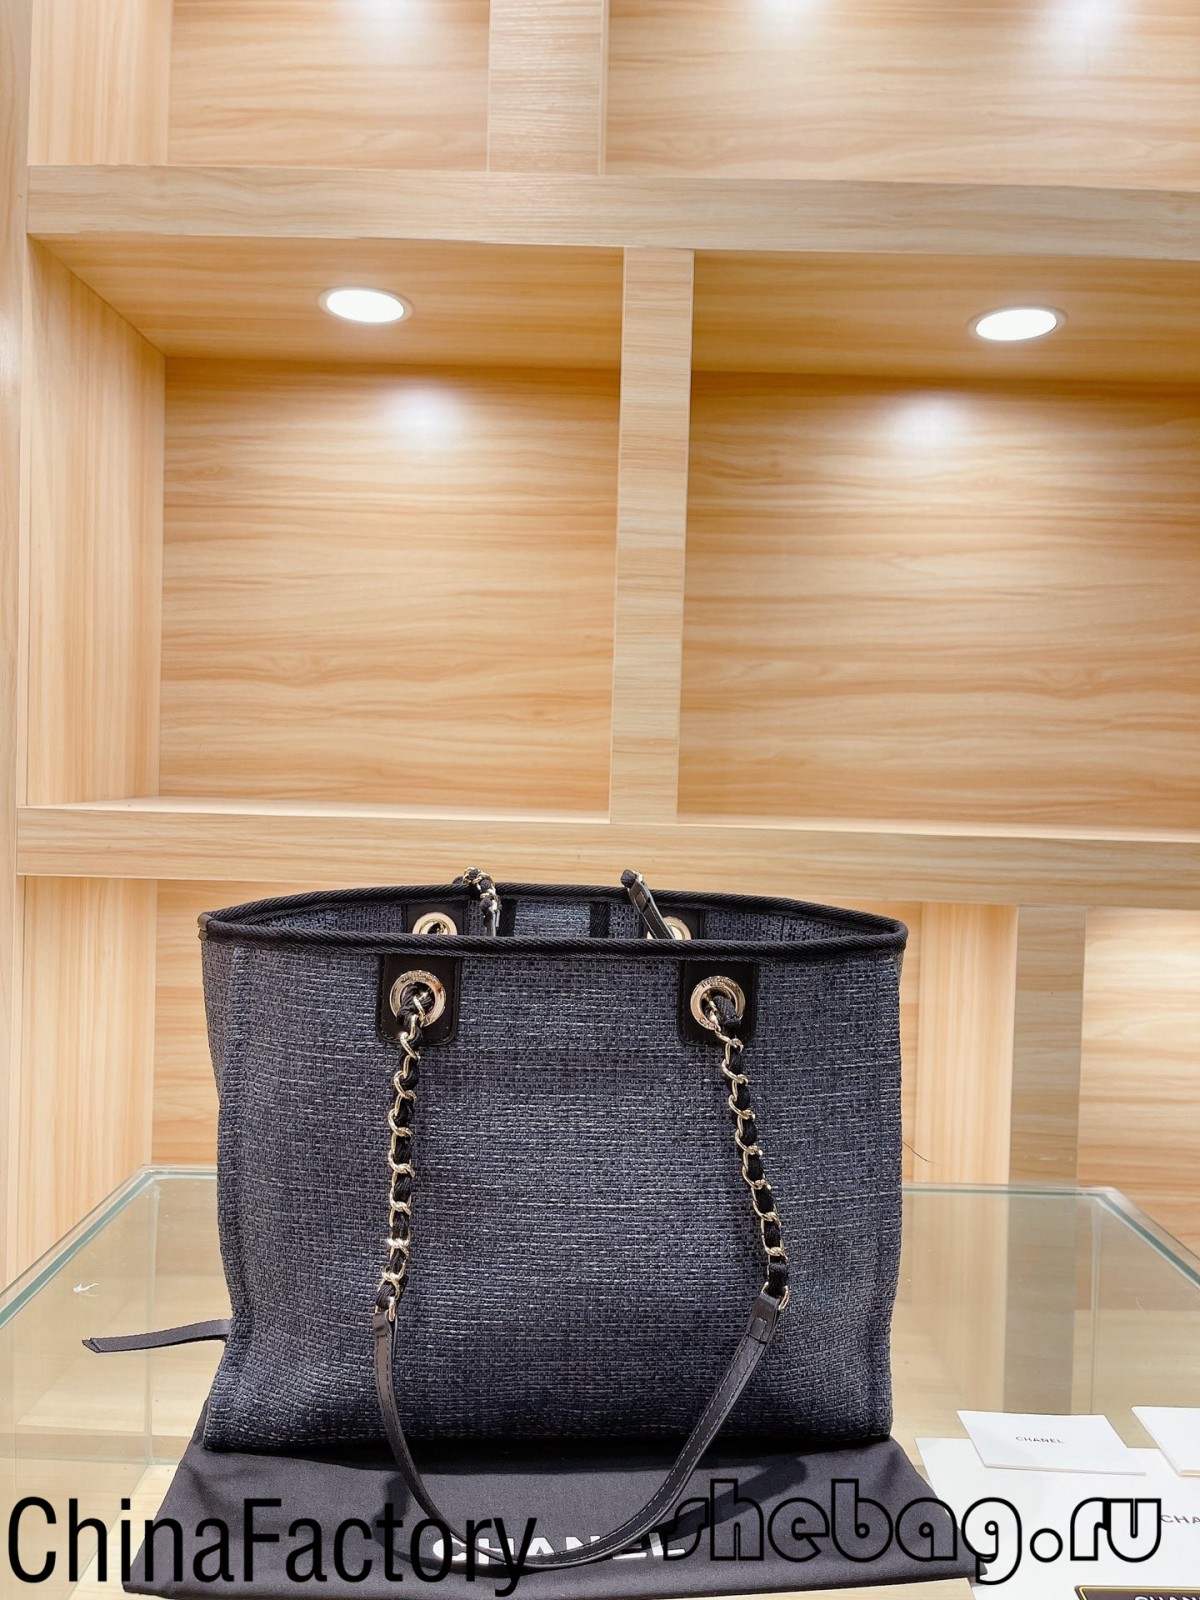 Chanel Deauville Canvas Tote Bag Replik Großhandelsverkäufer Empfehlung (2022 Hottest)-Beste Qualität gefälschte Louis Vuitton Bag Online Store, Replika Designer-Tasche ru